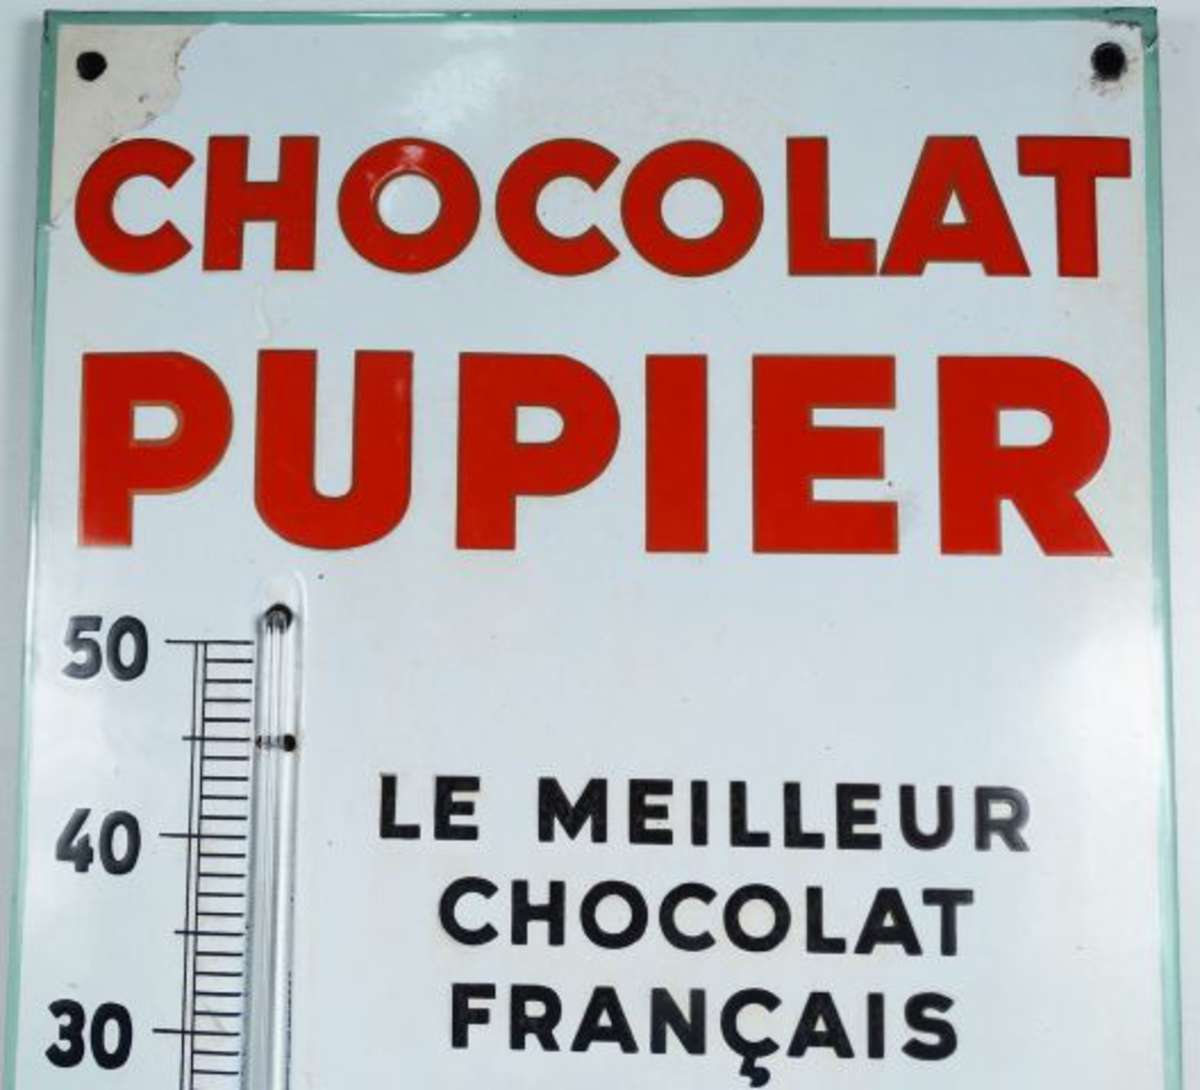 CHOCOLAT PUPIER à Saint-Etienne : Thermomètre émaillé plat à